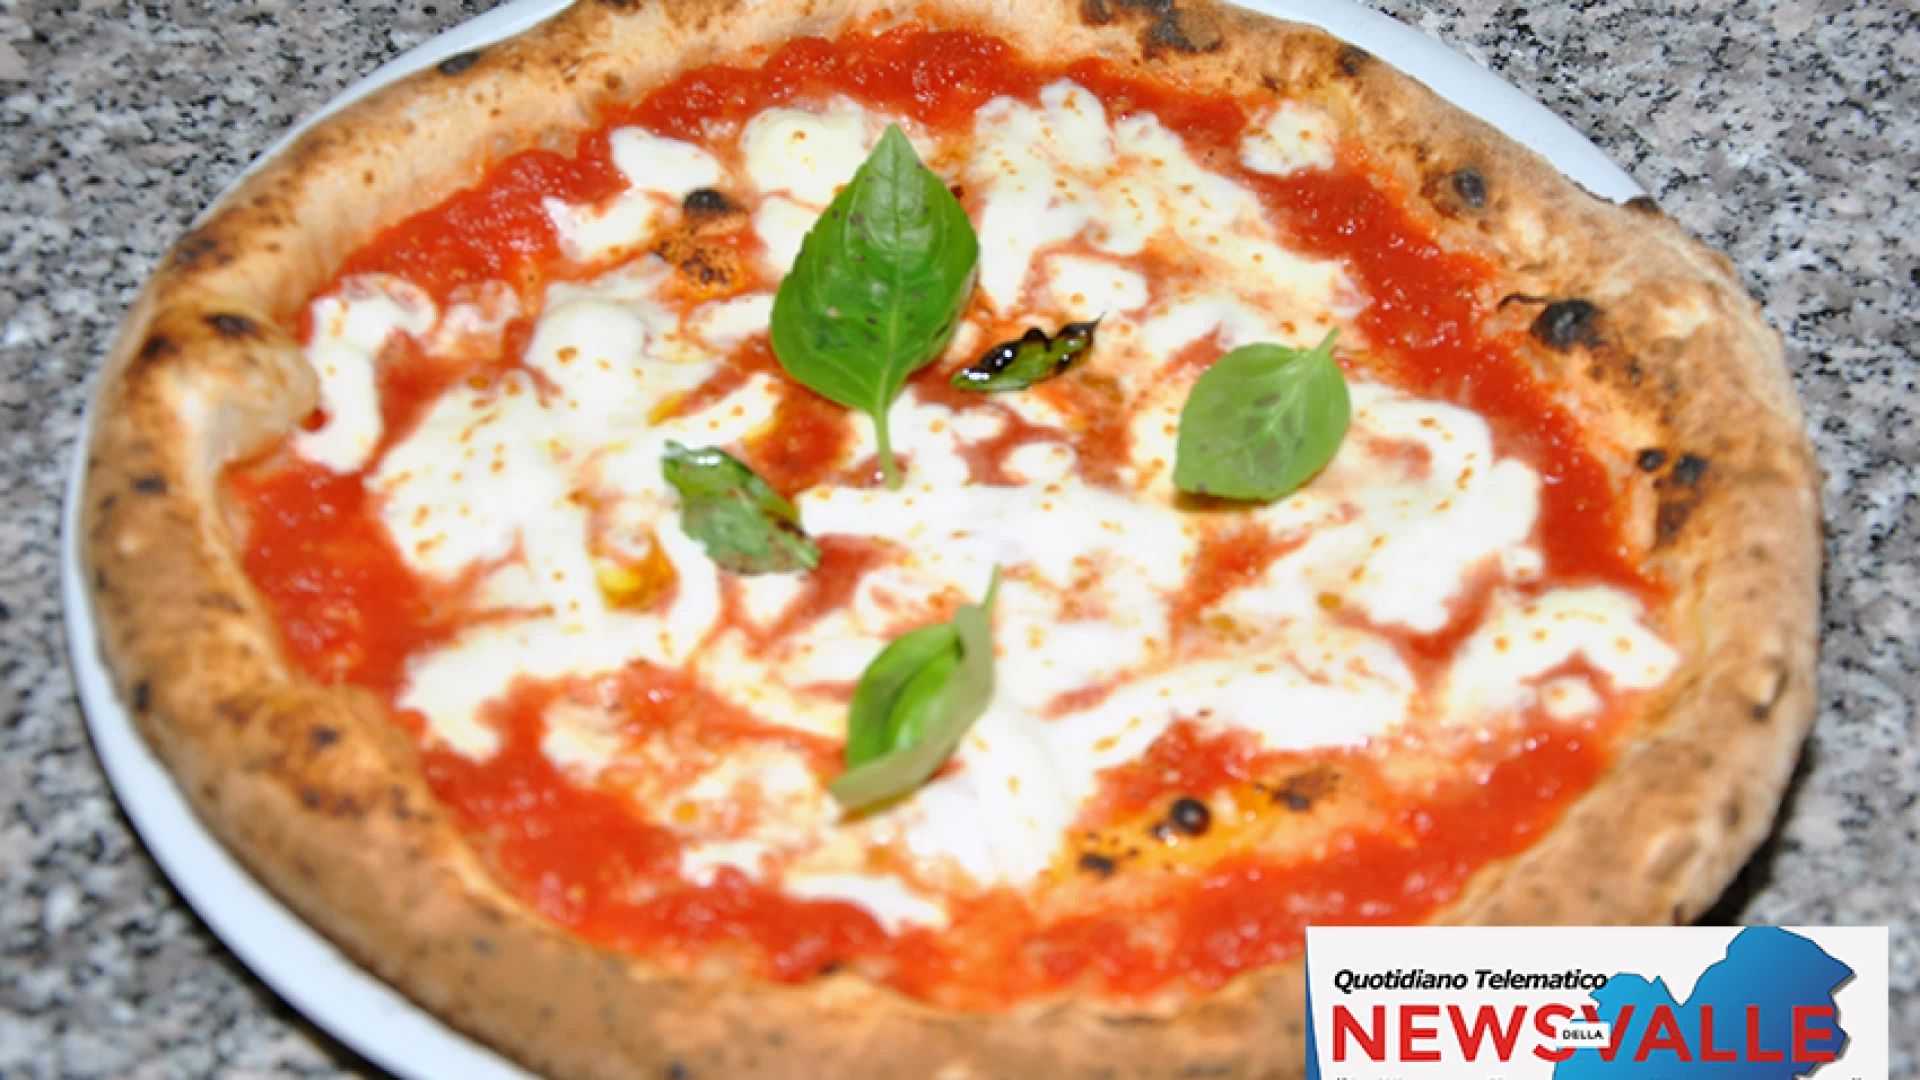 A NAPUL’E’ rivive il sapore della vera pizza napoletana. Prodotti tipici dell’area campana e il fritto napoletano tutti da assaporare.